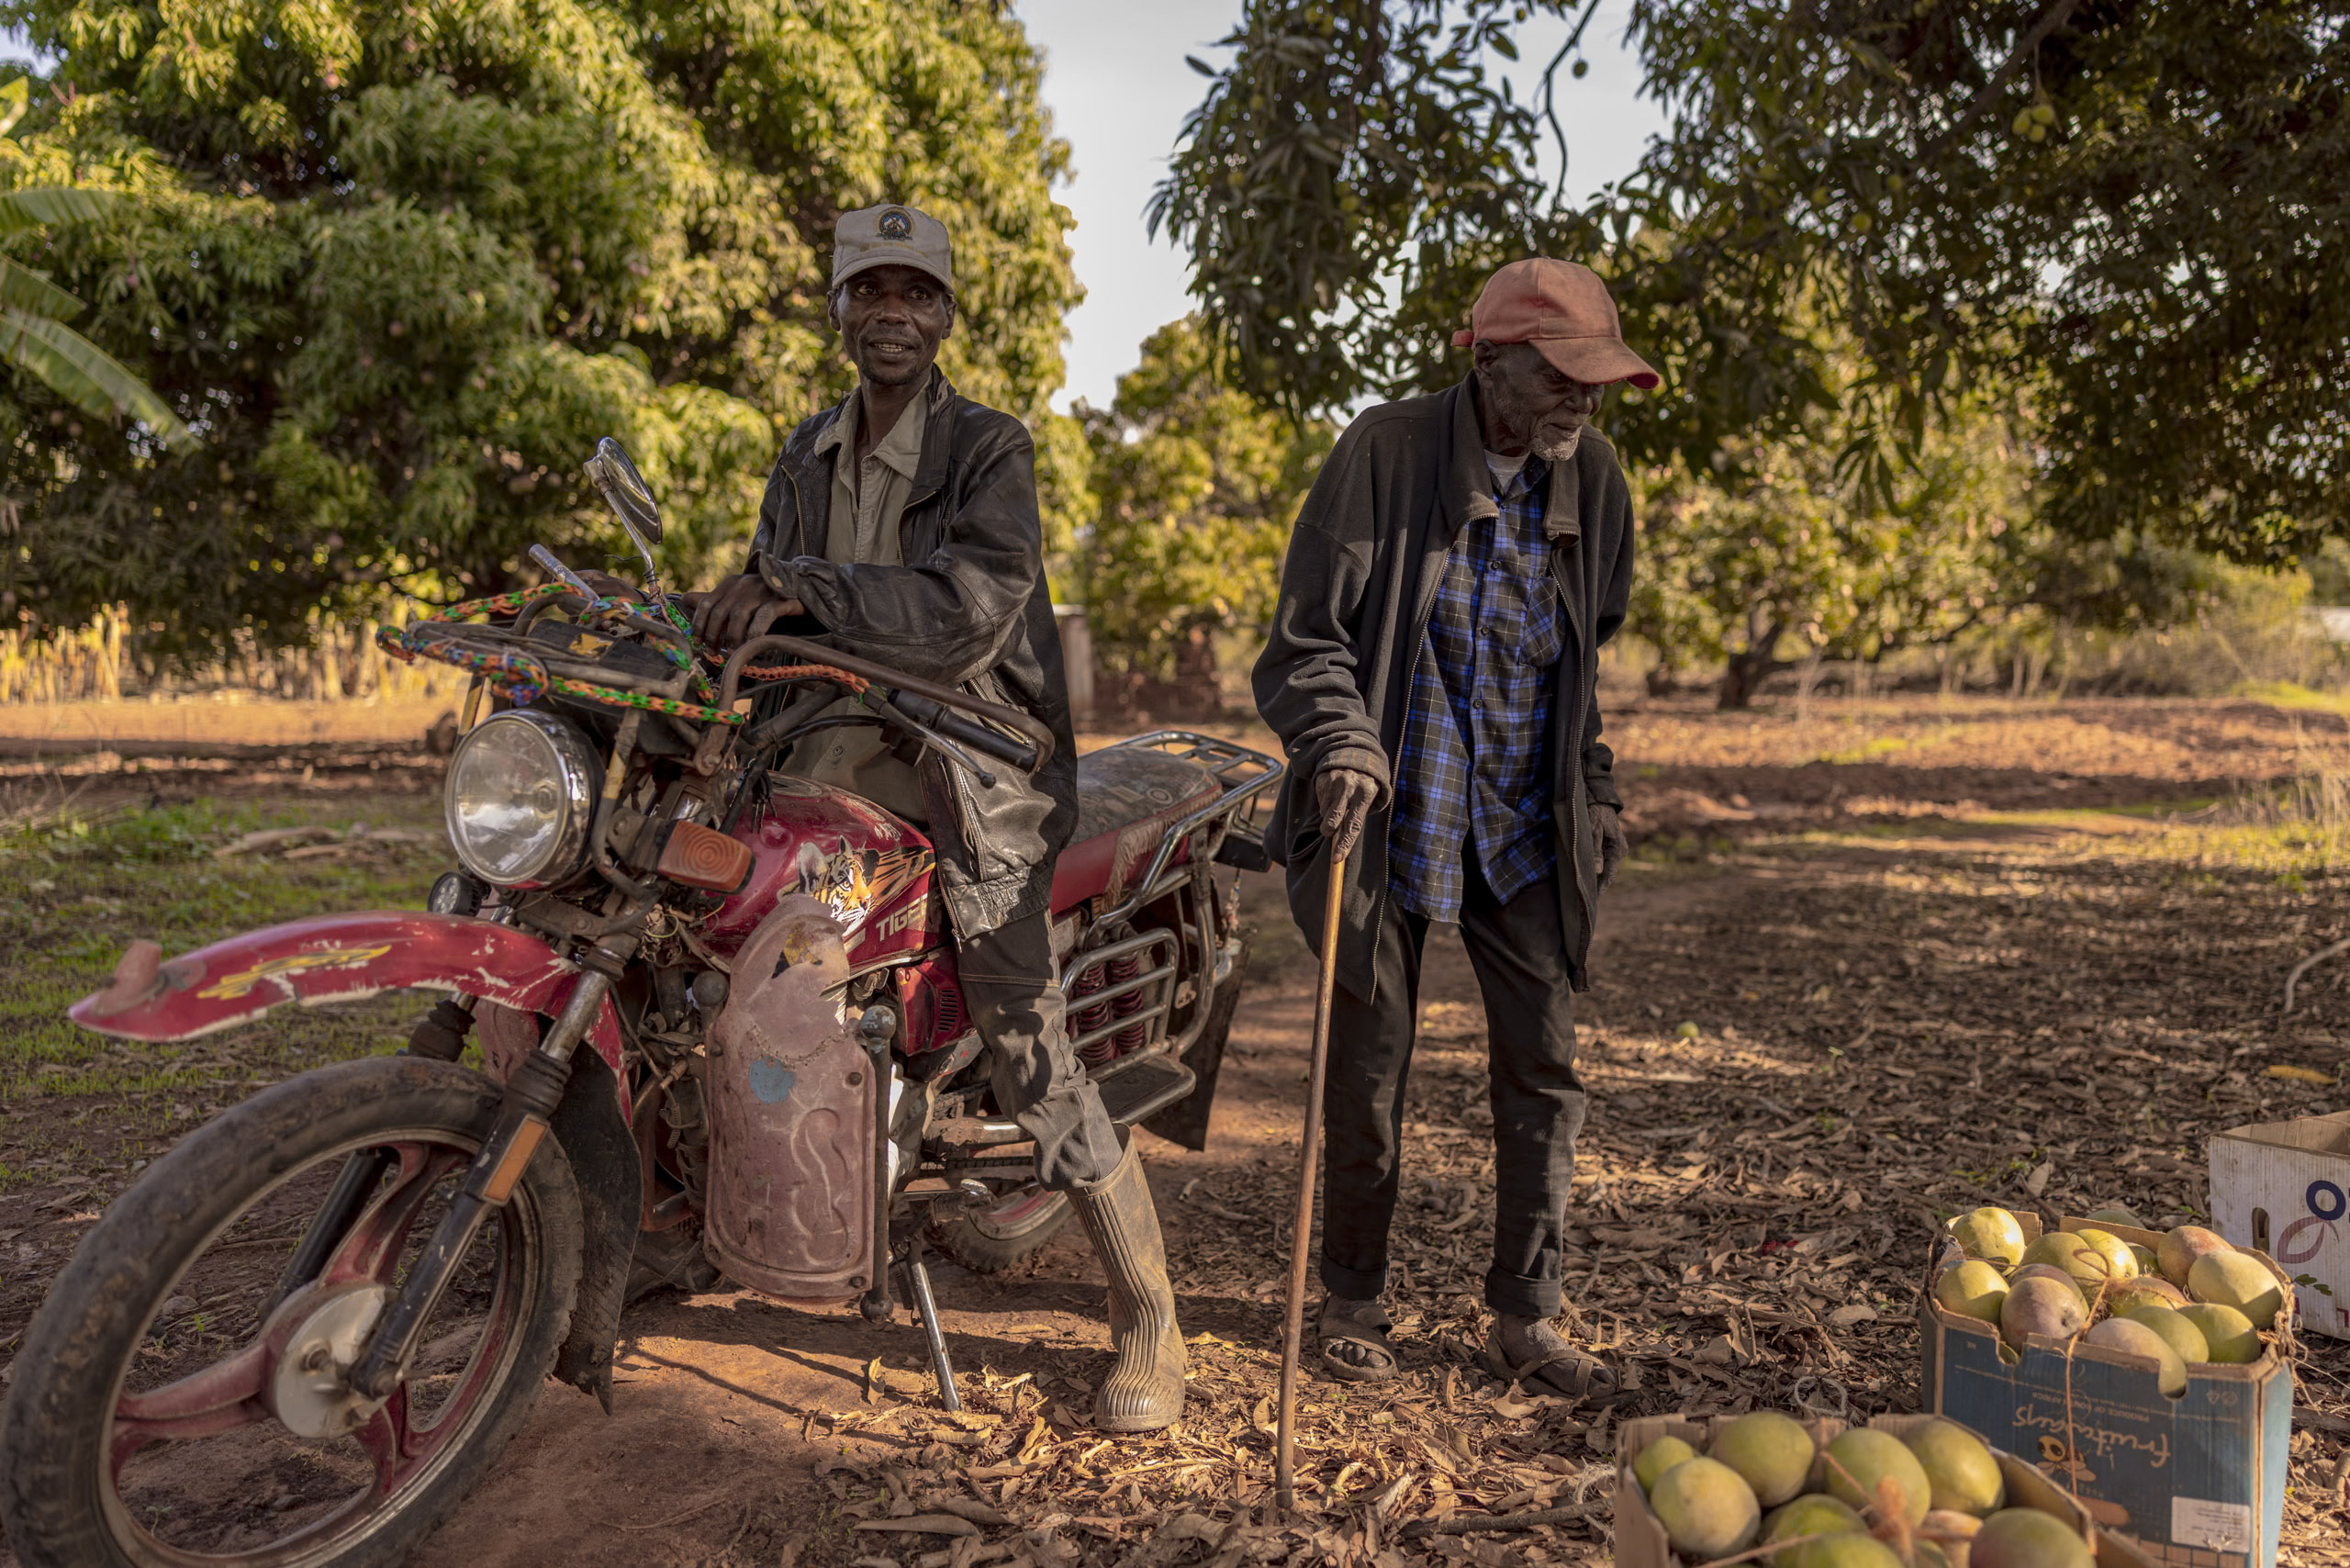 Zwei ältere Männer in ländlicher Umgebung, einer steht neben einem Motorrad, der andere neben einem Stapel Mangos zum Verkauf. Im Hintergrund Bäume und Feldweg. © Fotografie Tomas Rodriguez